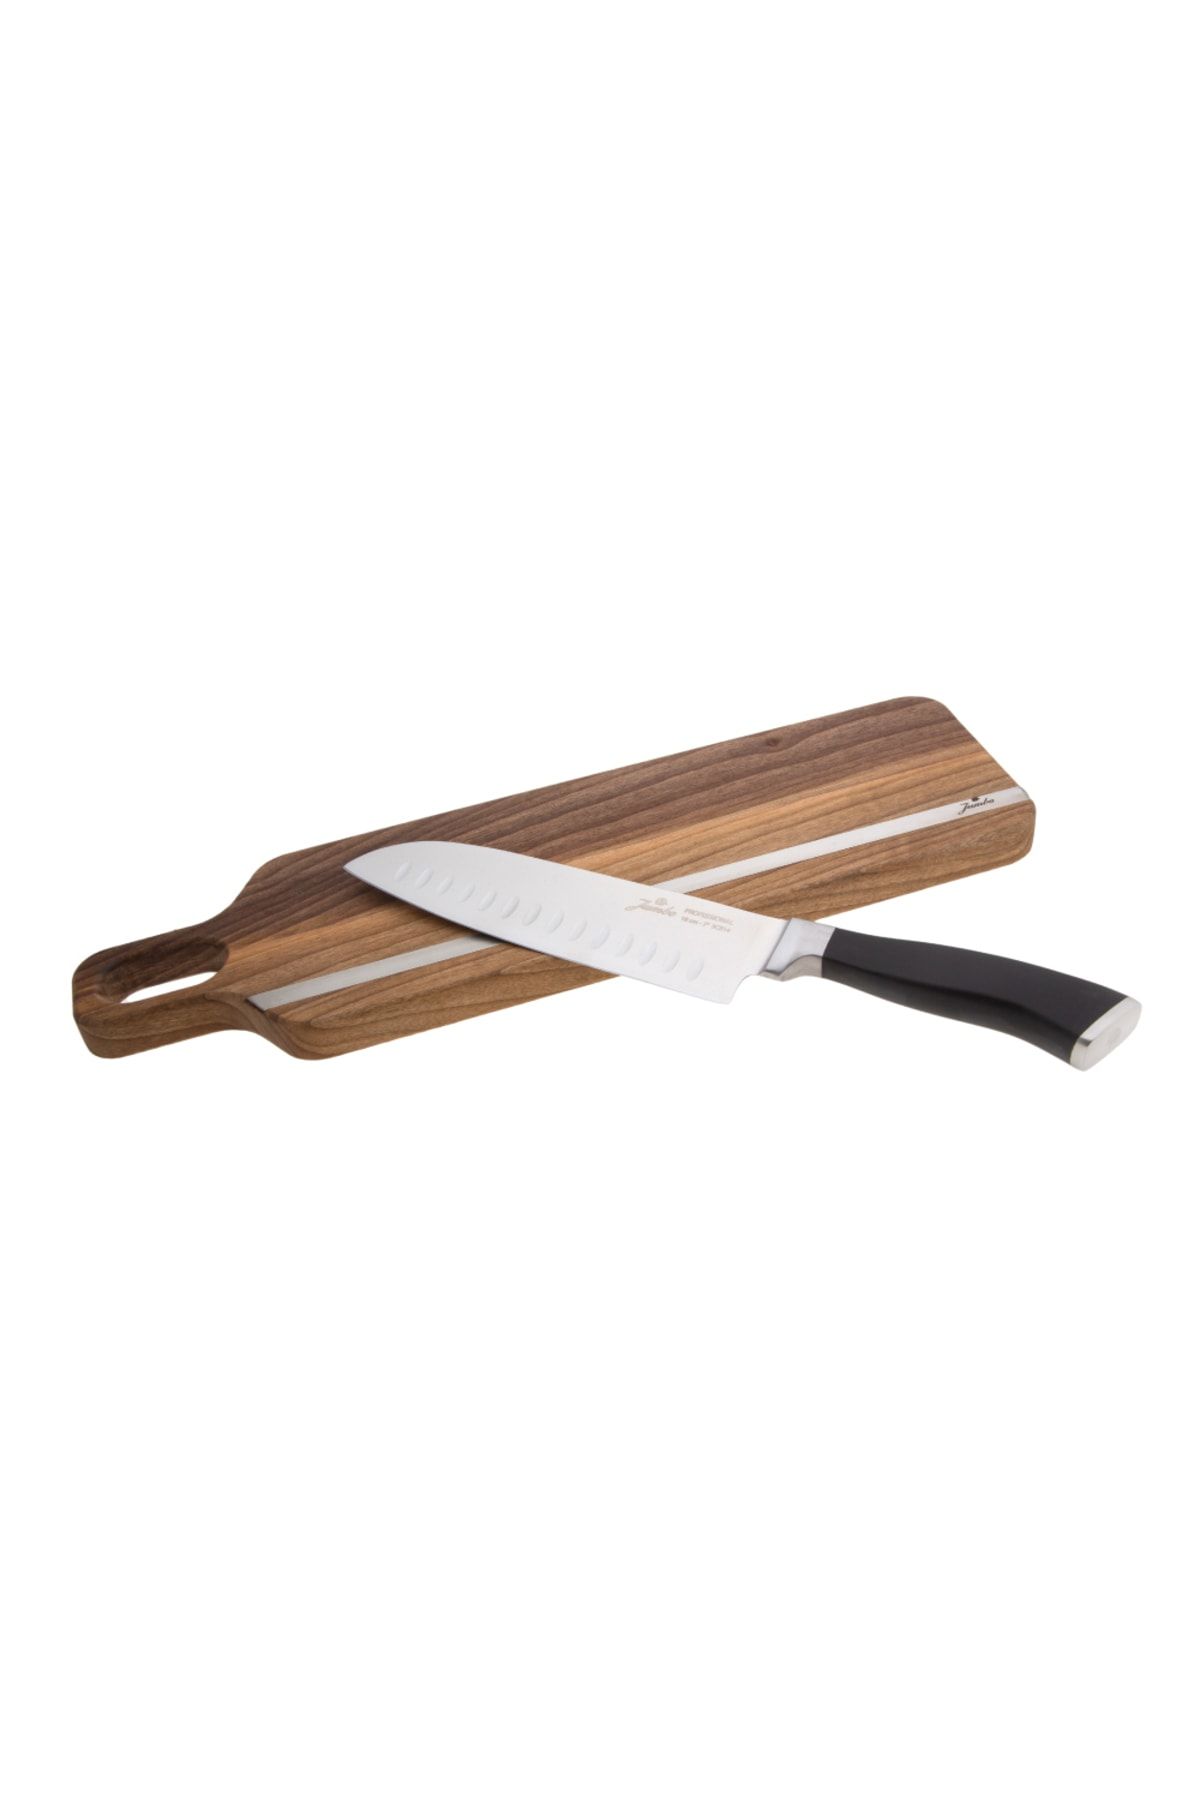 Jumbo Utsuri Professional Chef Bıçağı 18 Cm